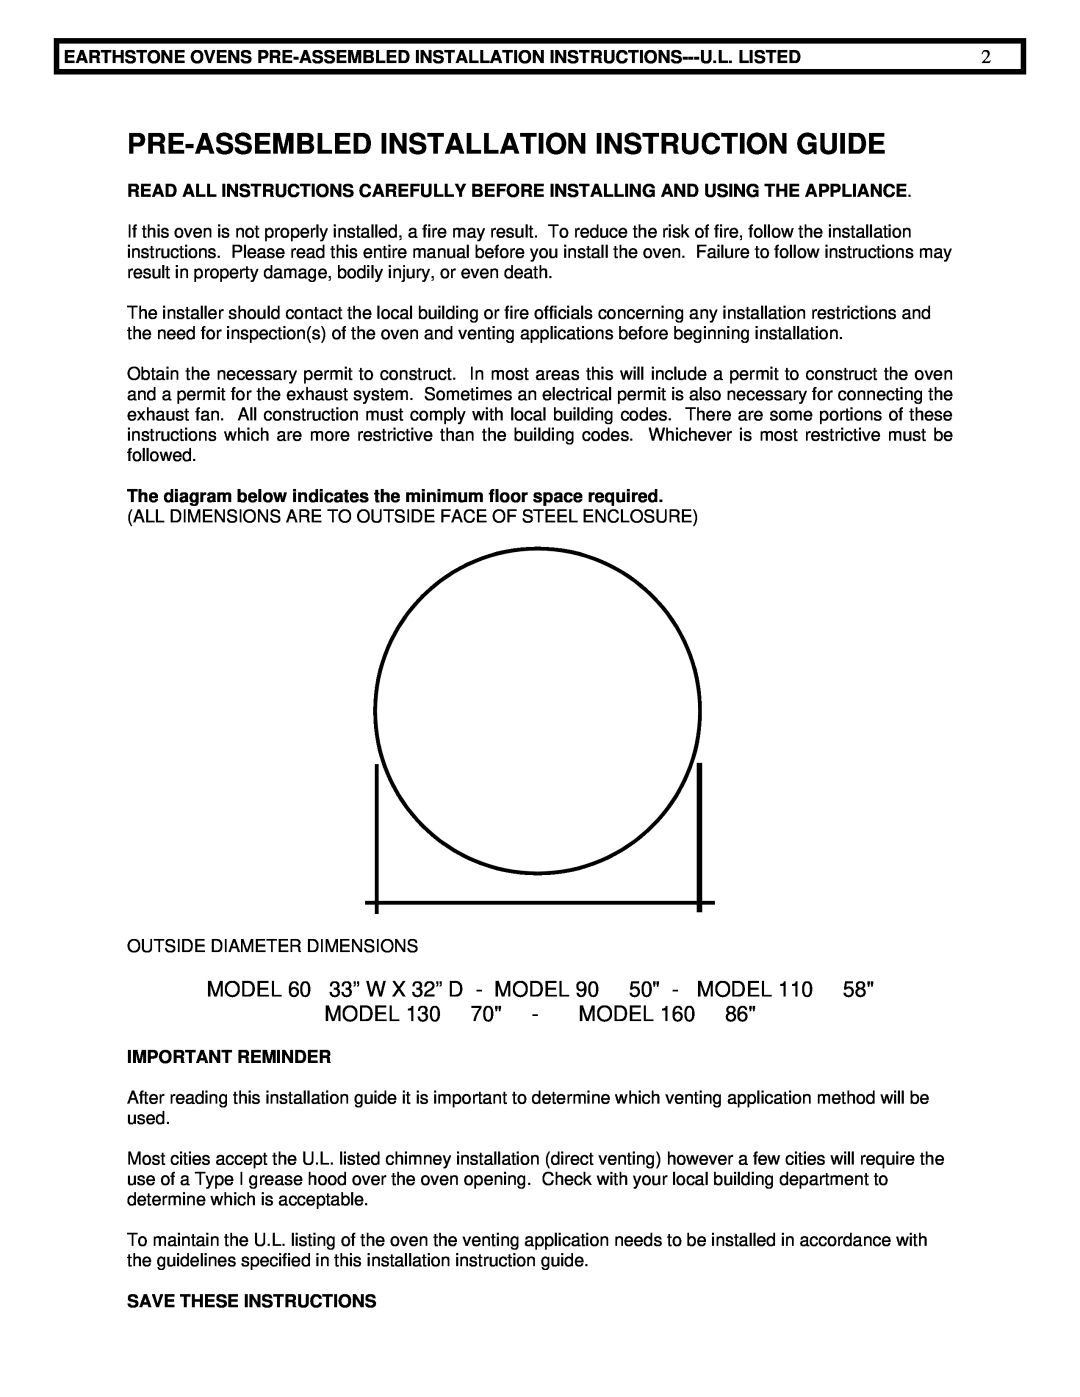 EarthStone woofire oven Pre-Assembledinstallation Instruction Guide, MODEL 60 33” W X 32” D - MODEL, Model 